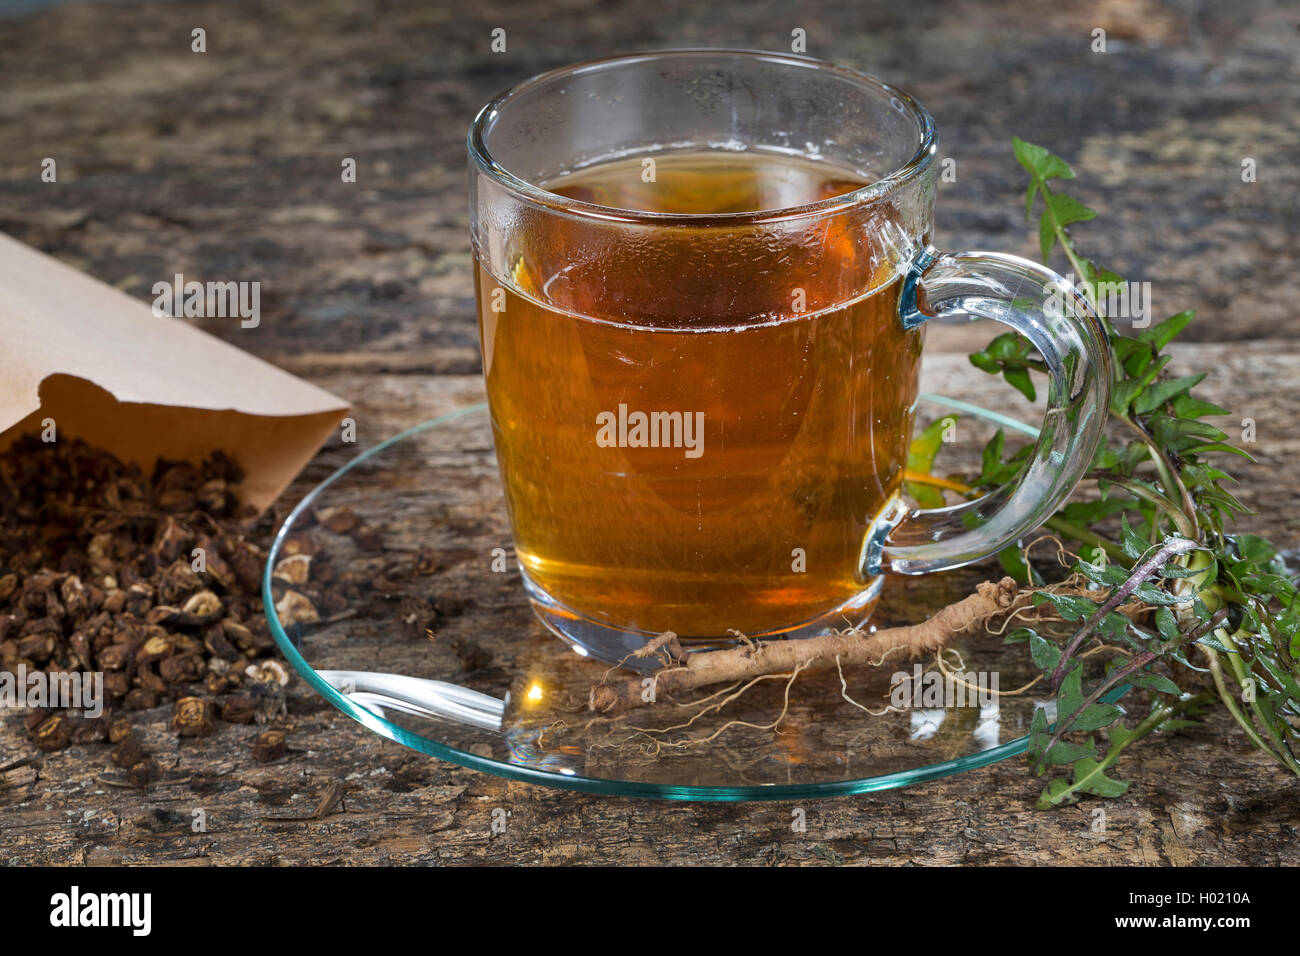 Le pissenlit officinal (Taraxacum officinale) racine de pissenlit, thé, thé de racines rôtis, Allemagne Banque D'Images